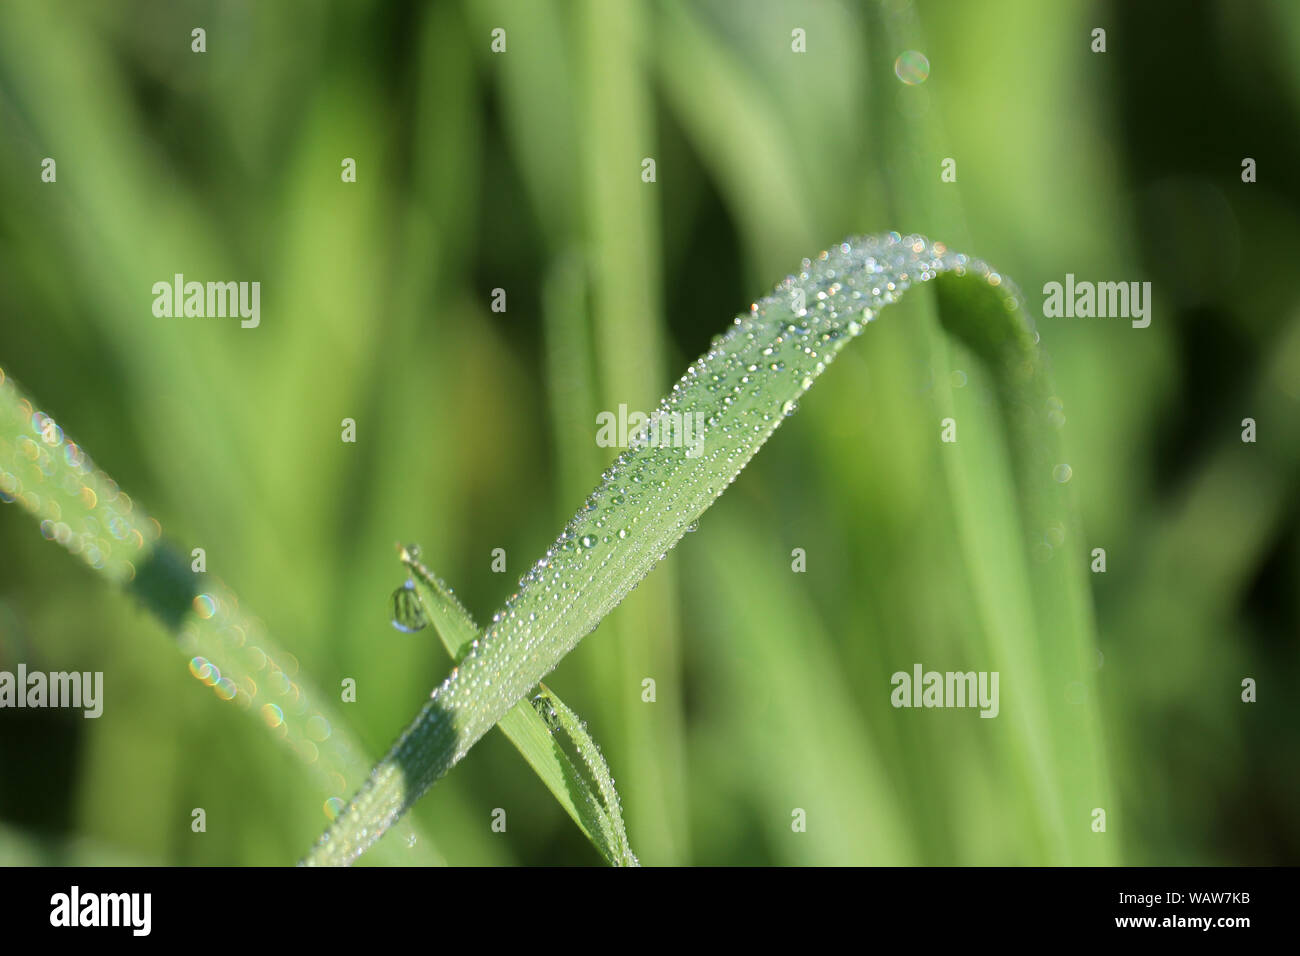 La rugiada su una lama di erba verde, macro shot. Gocce d'acqua scintillante in giornata soleggiata, concetto di freschezza, sullo sfondo della natura Foto Stock